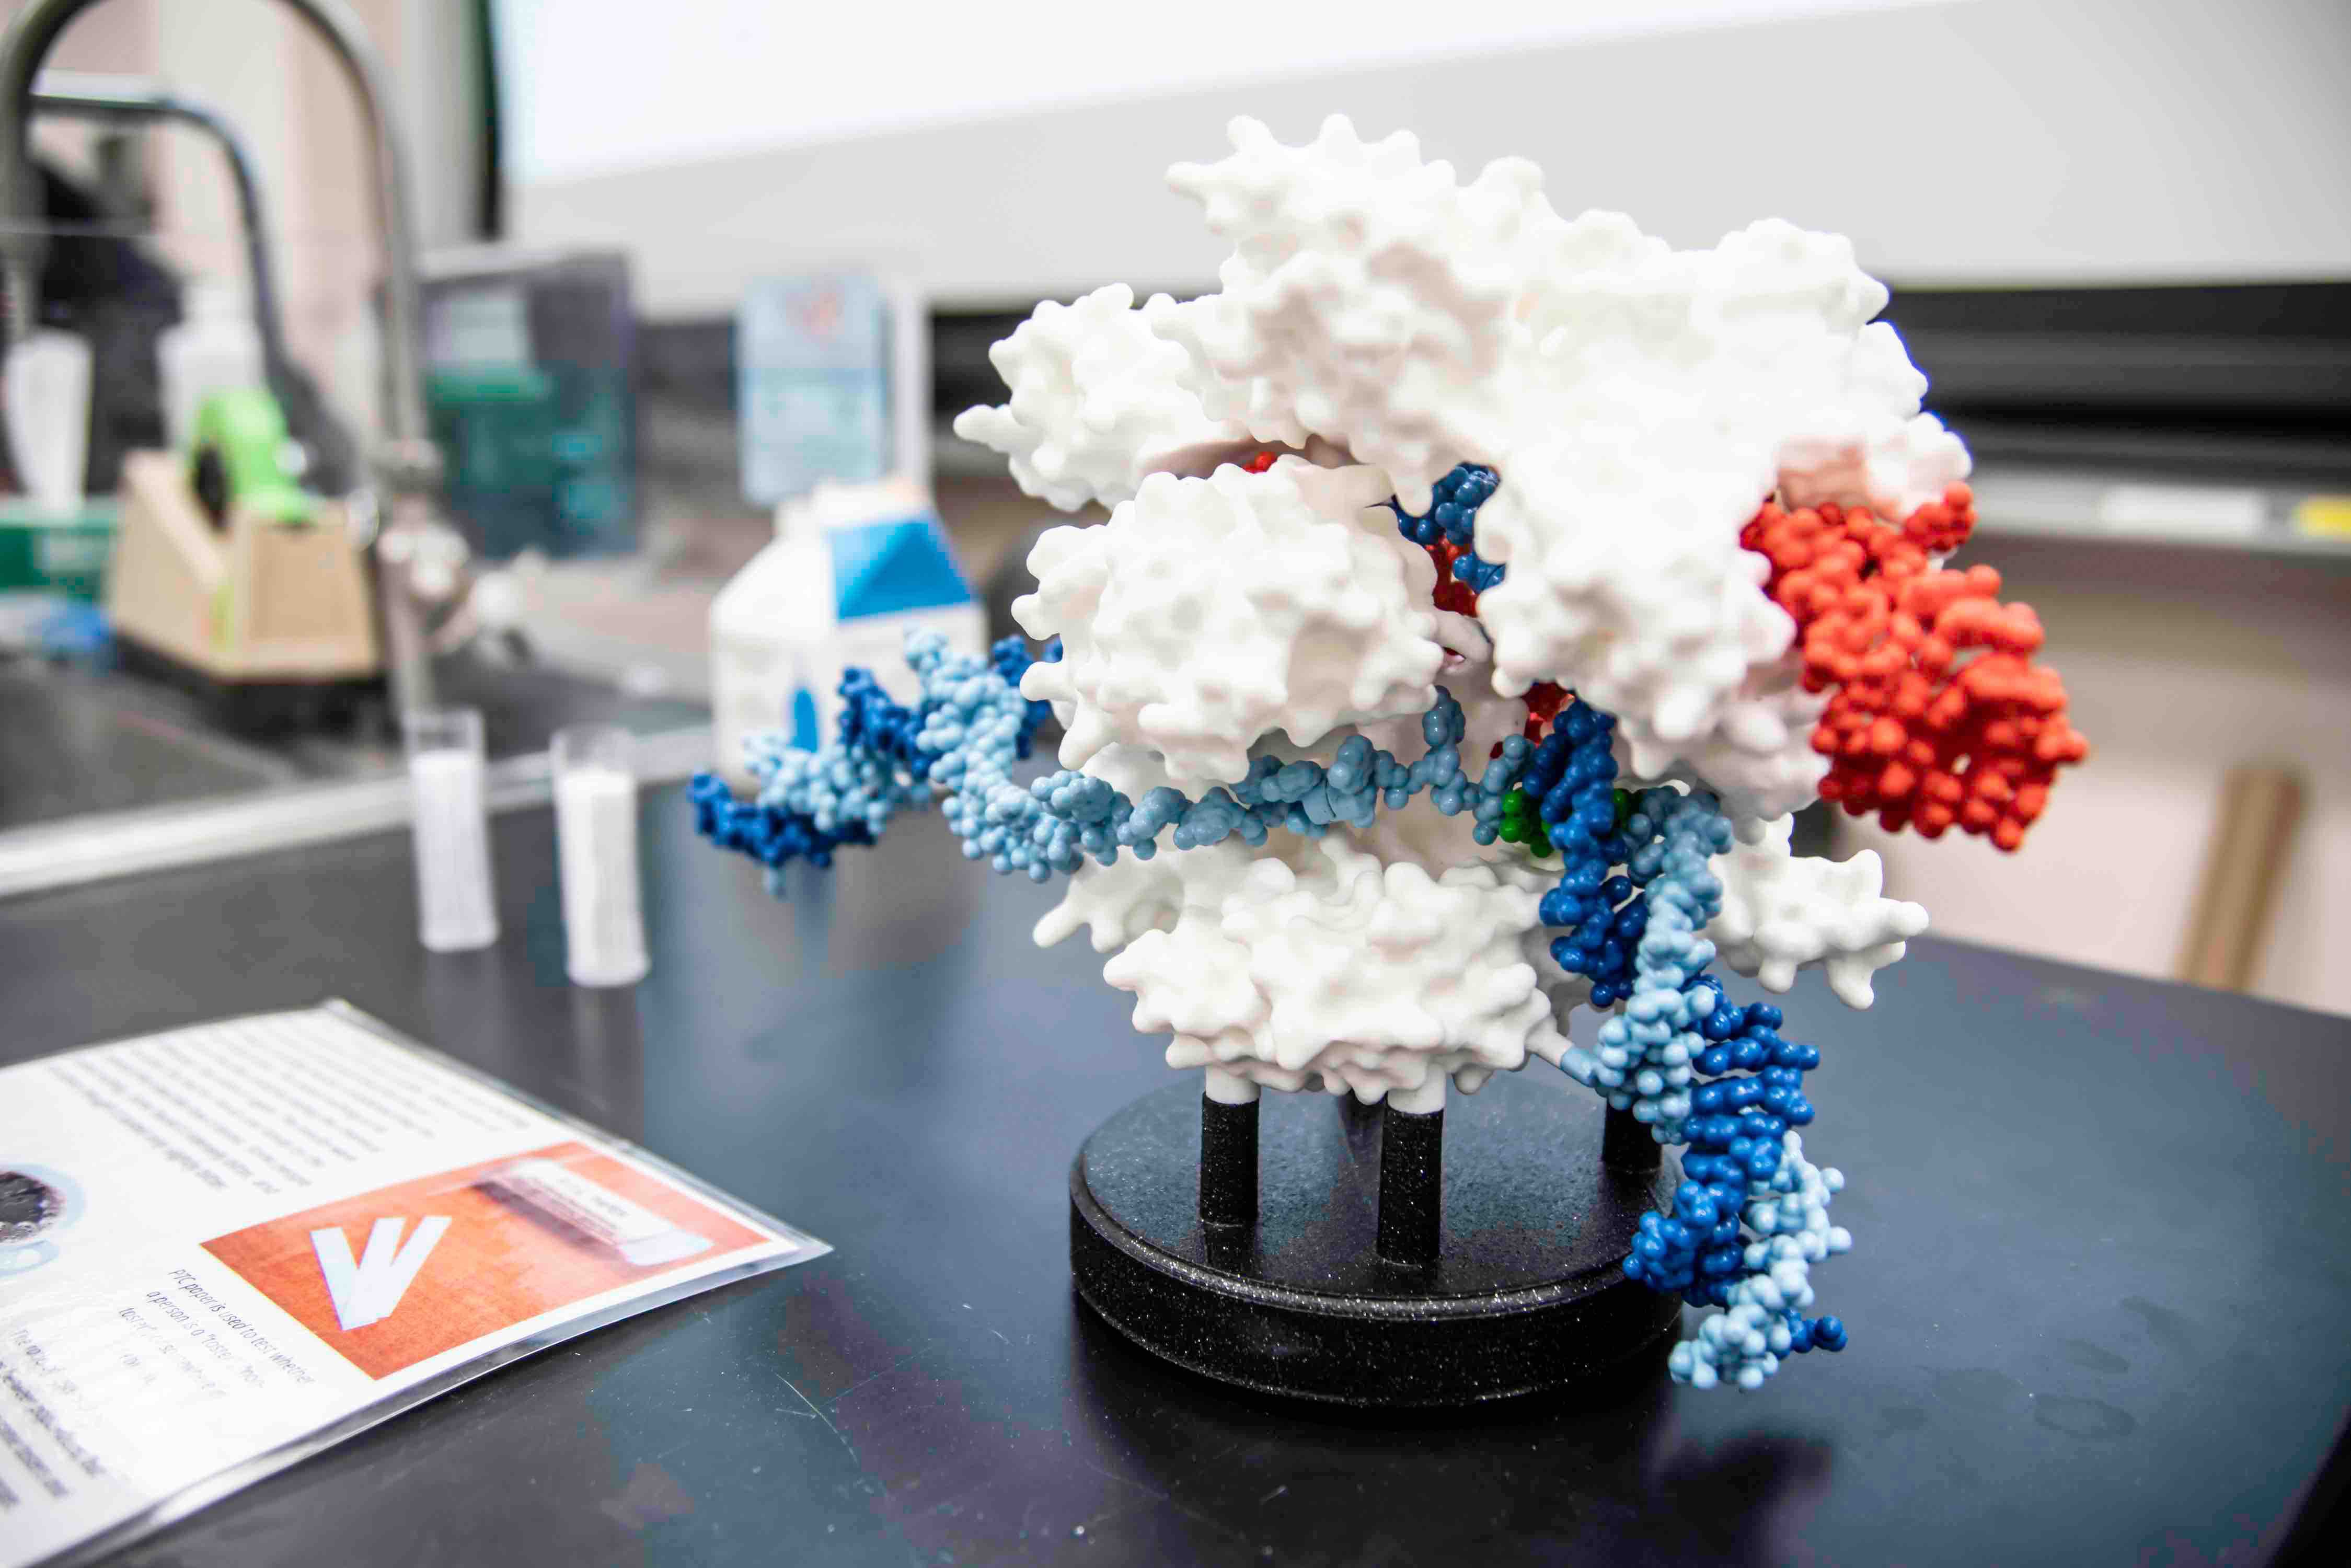 Modelo impreso en 3D de Cas9 unido a ARN y ADN